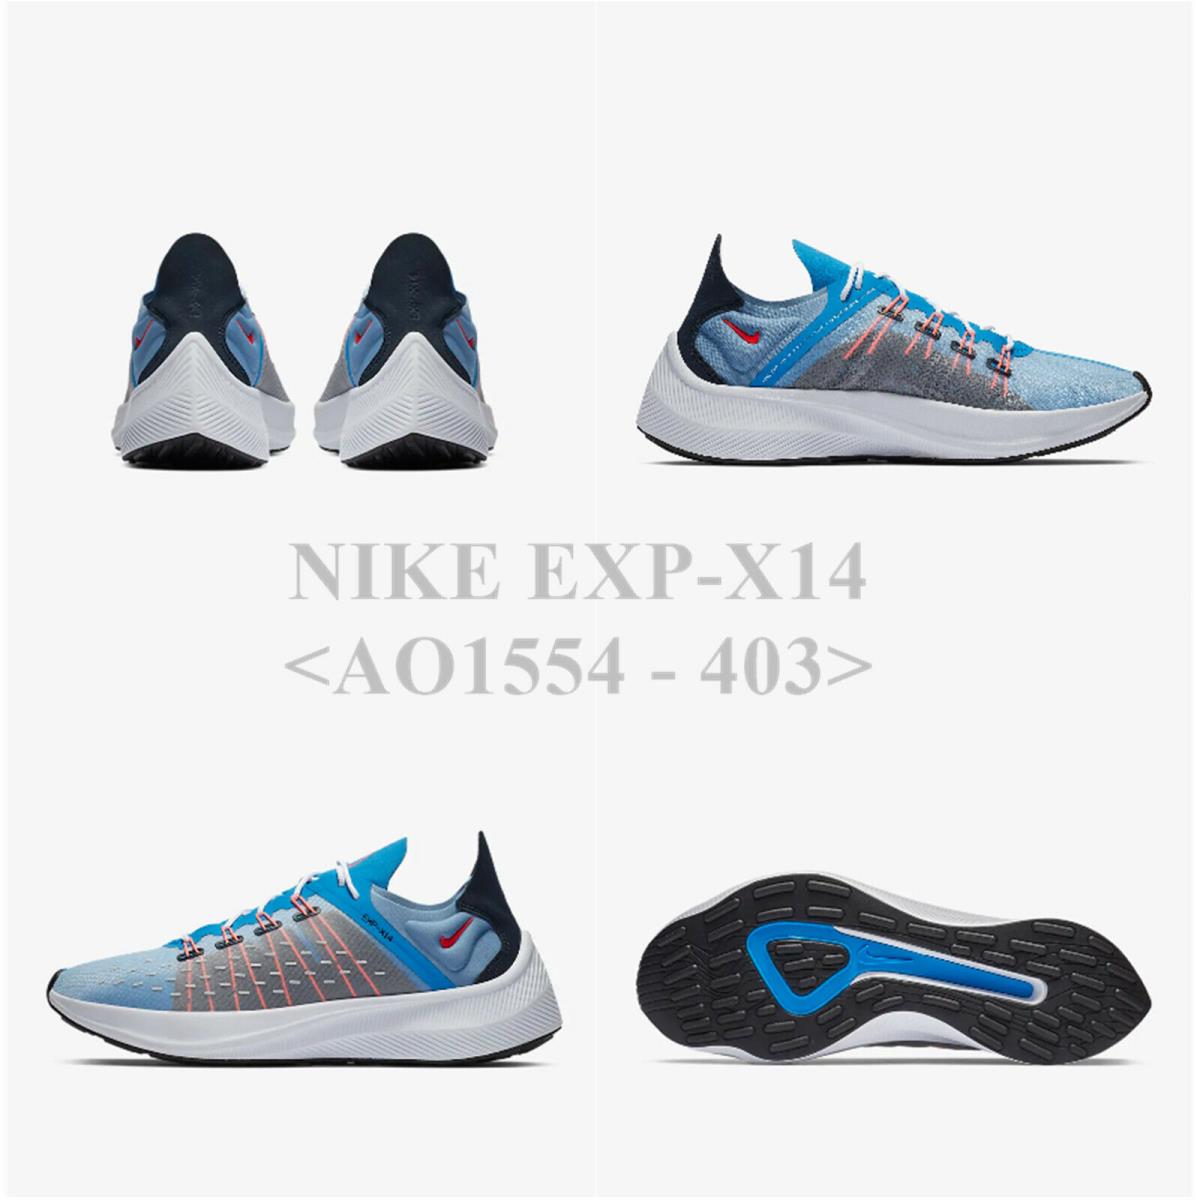 Nike EXP-X14 AO1554 - 403 .men`s Running Shoe